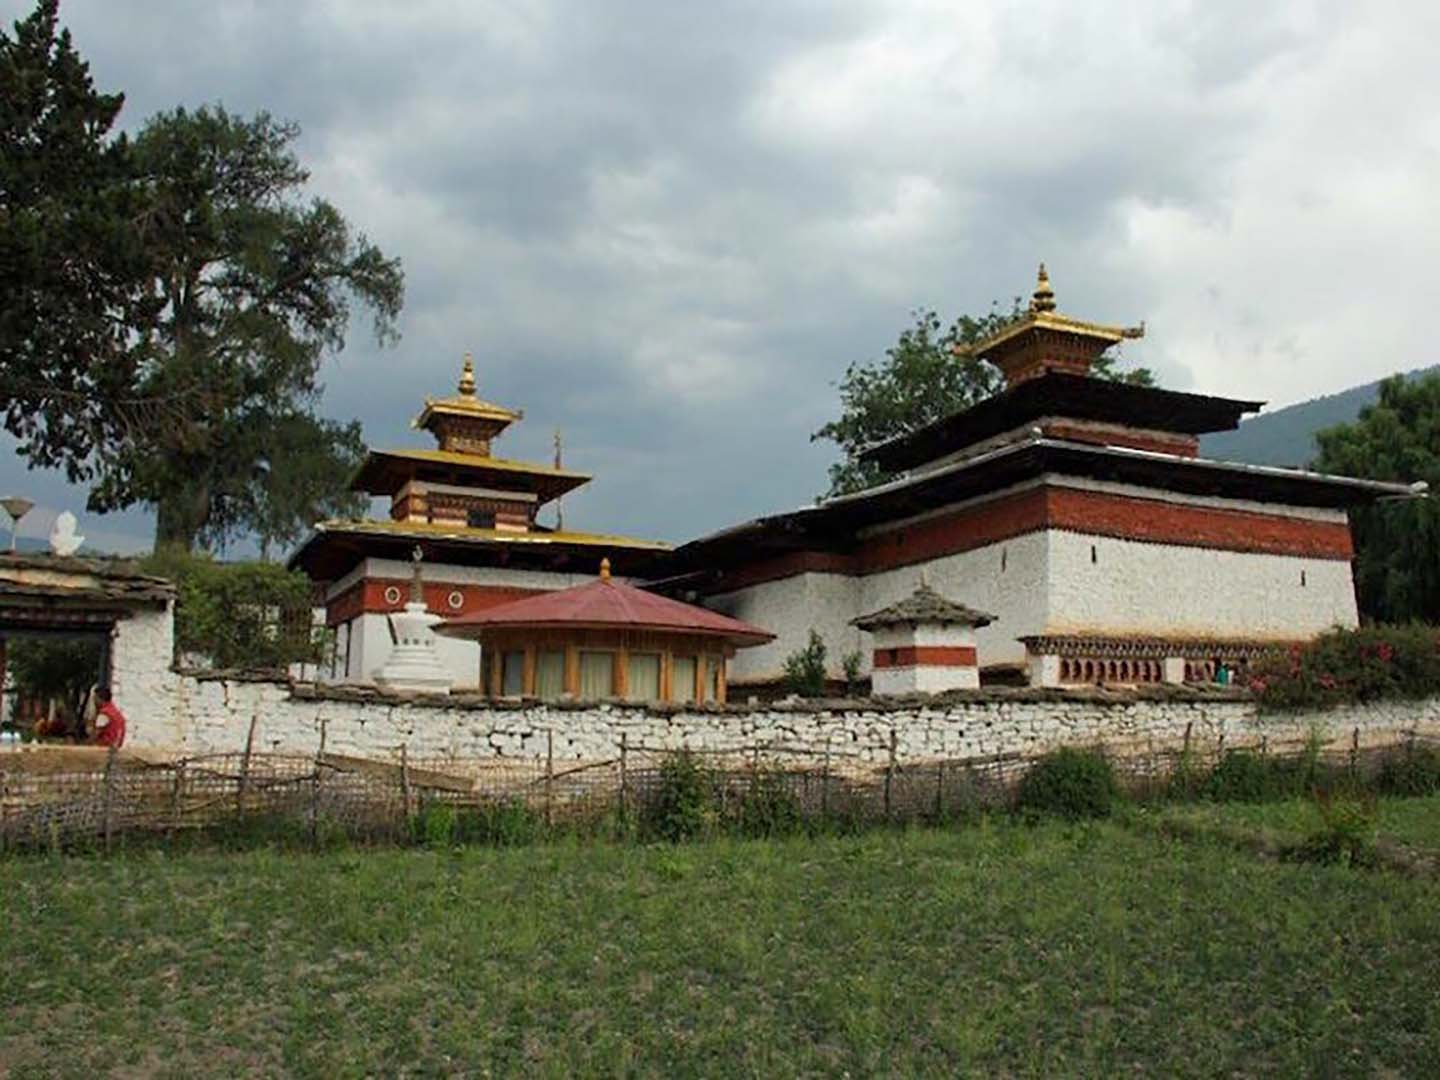 Kichu Lhakhang in Paro